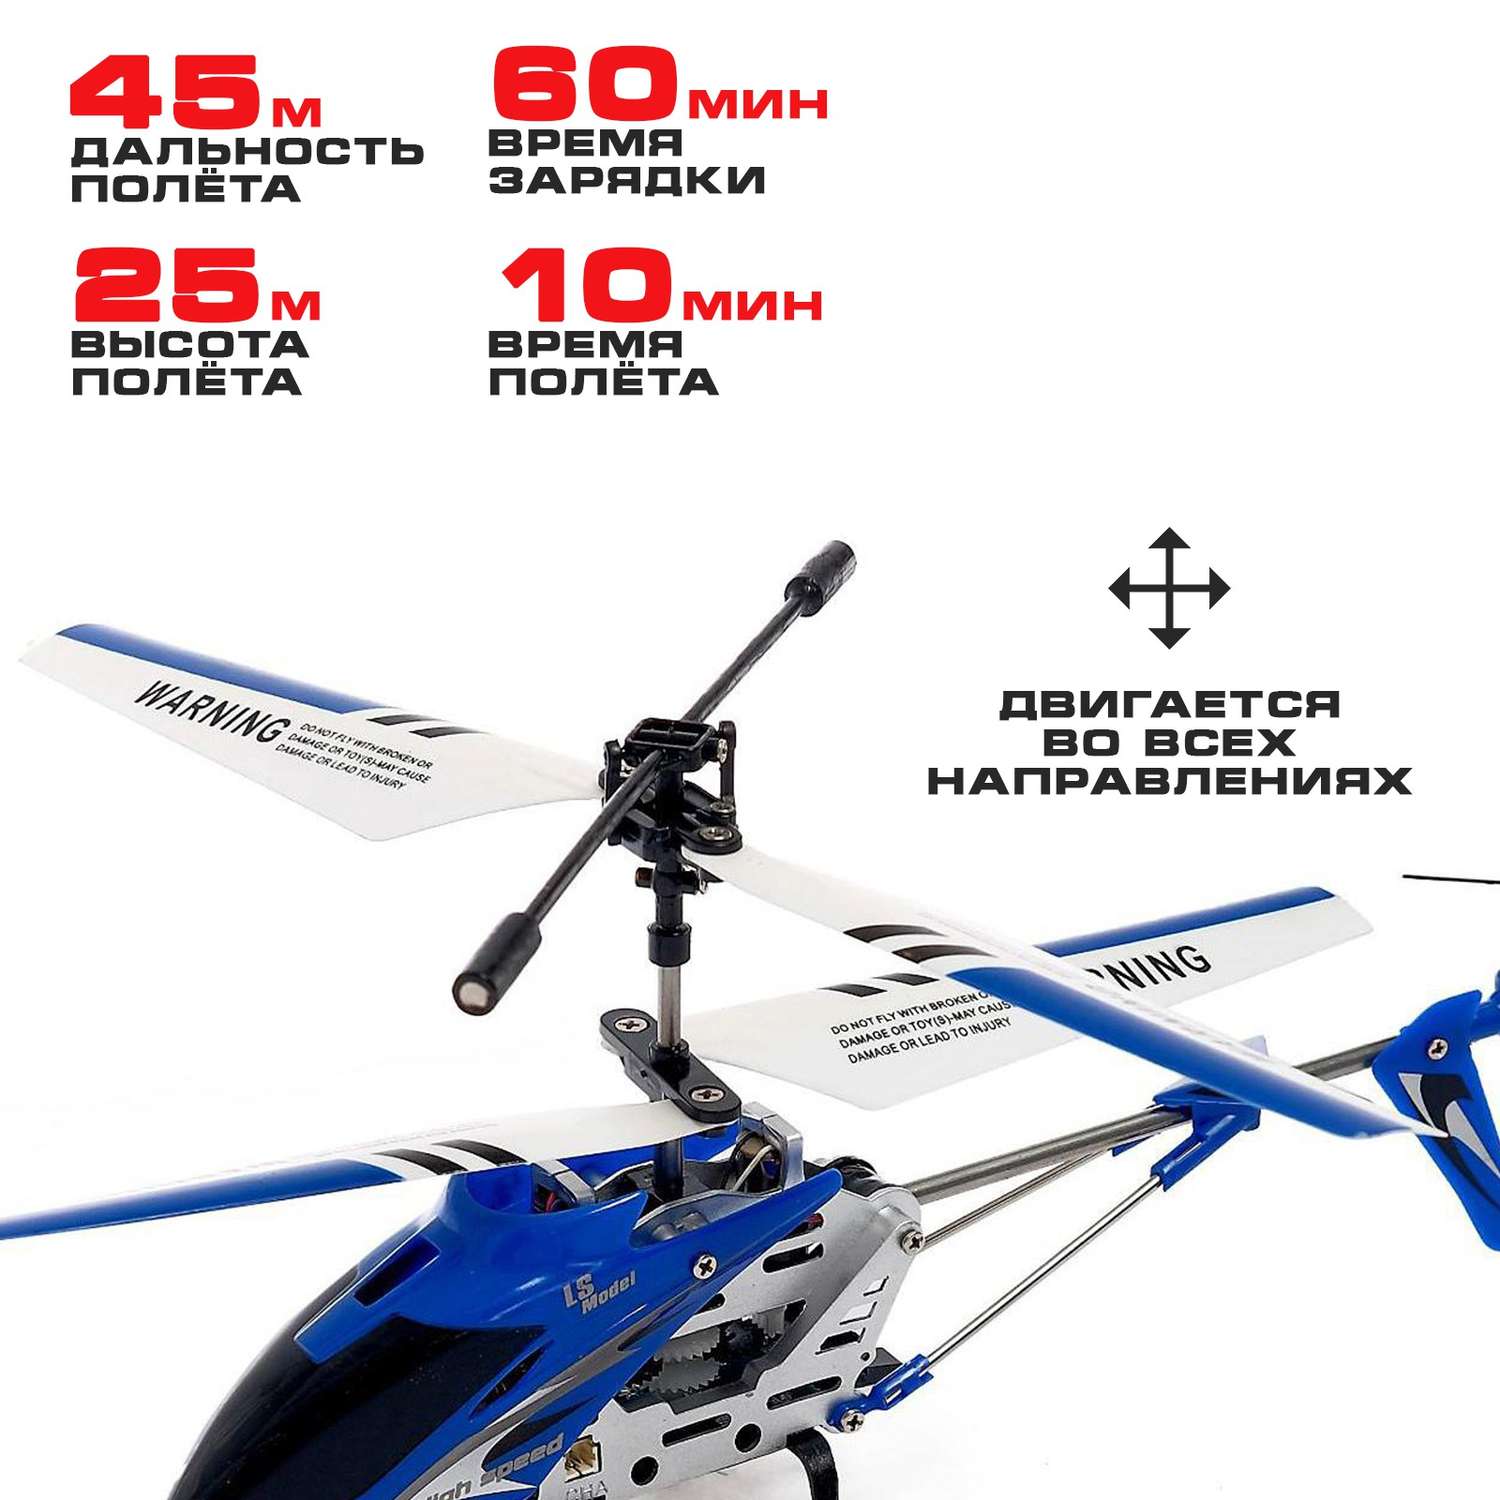 Вертолёт Автоград радиоуправляемый SKY с гироскопом цвет синий - фото 3